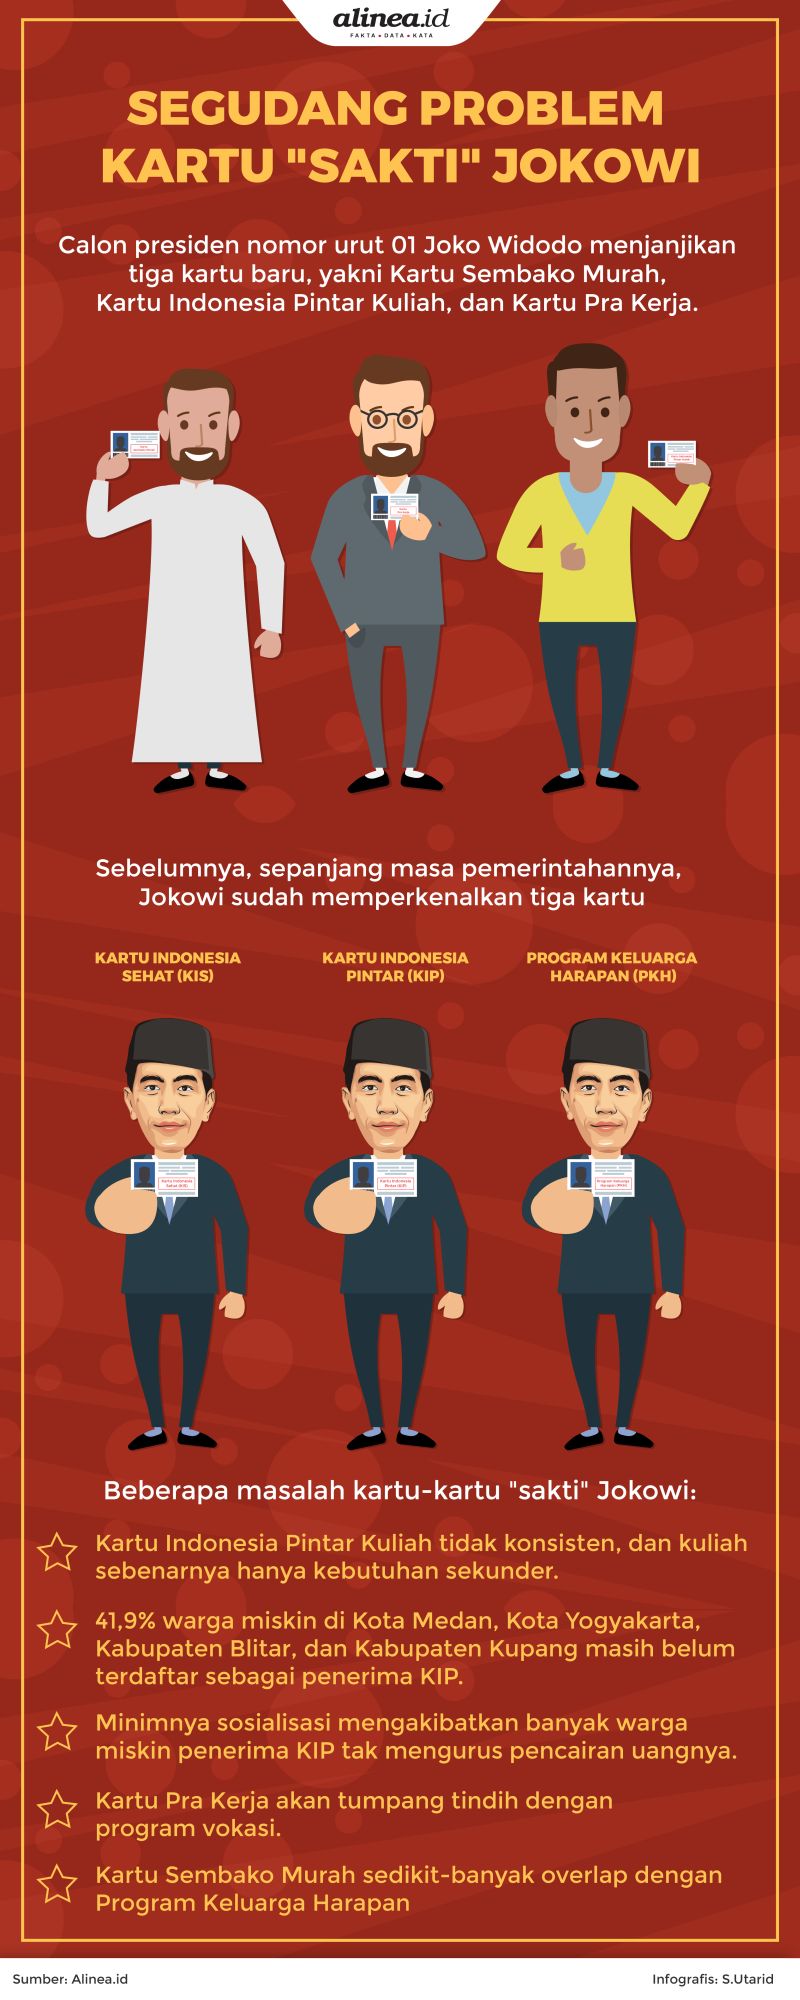 Jokowi berjanji akan mengeluarkan tiga kartu lagi, yakni Kartu Sembako Murah, Kartu Indonesia Pintar Kuliah, dan Kartu Pra Kerja.